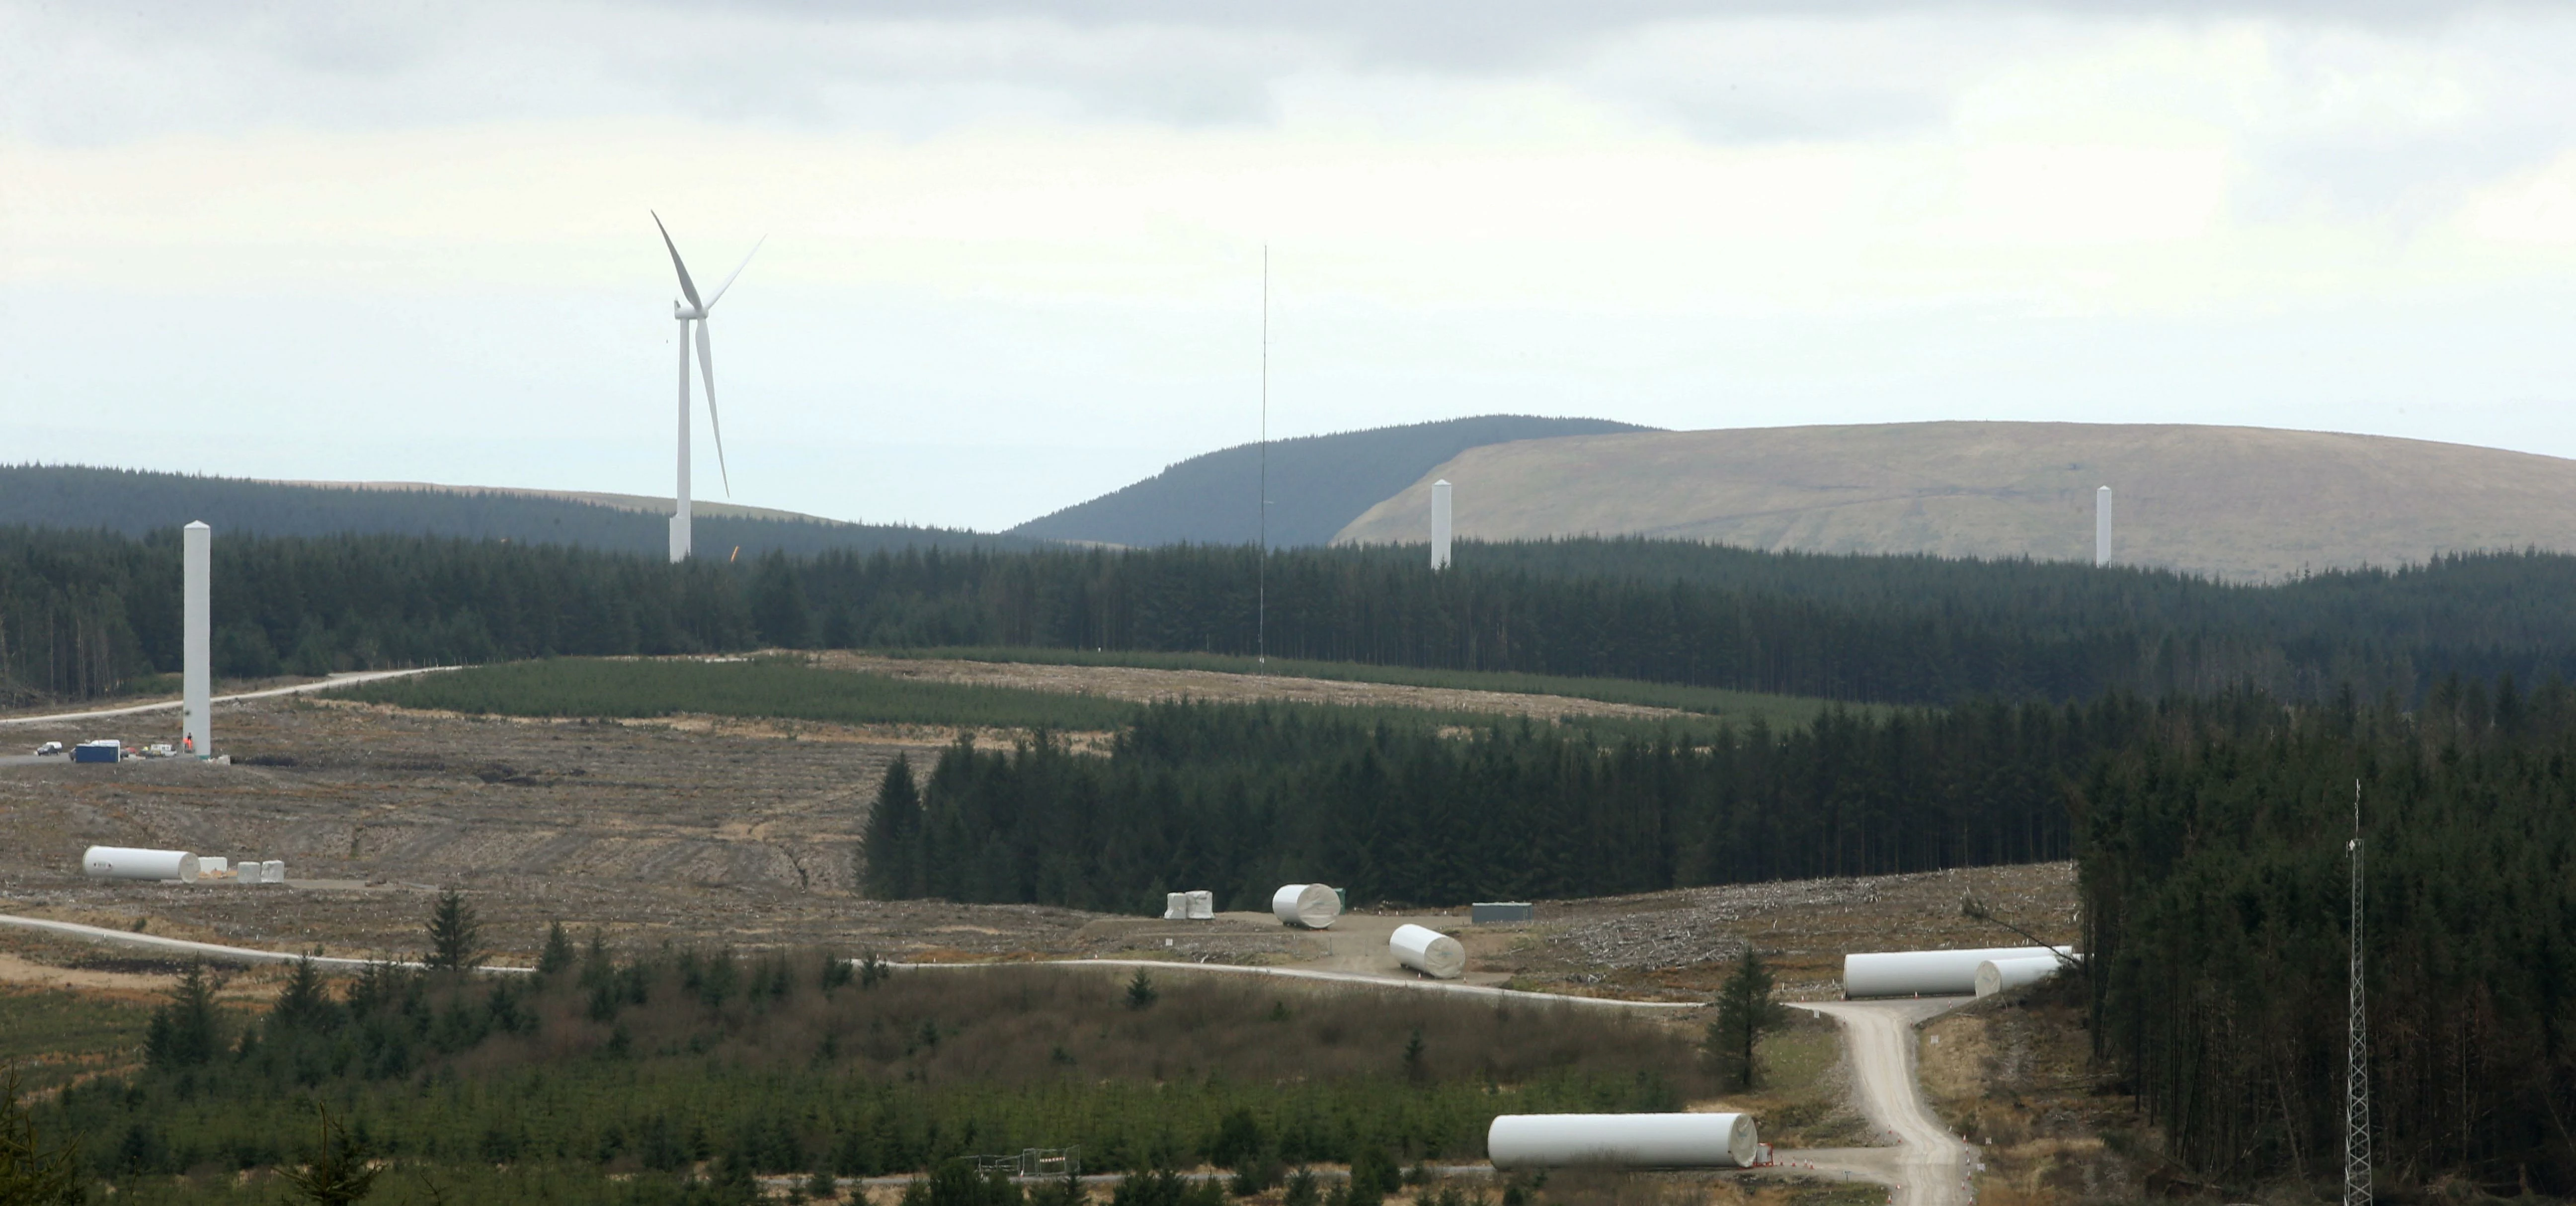 Pen Y Cymoedd wind farm. 